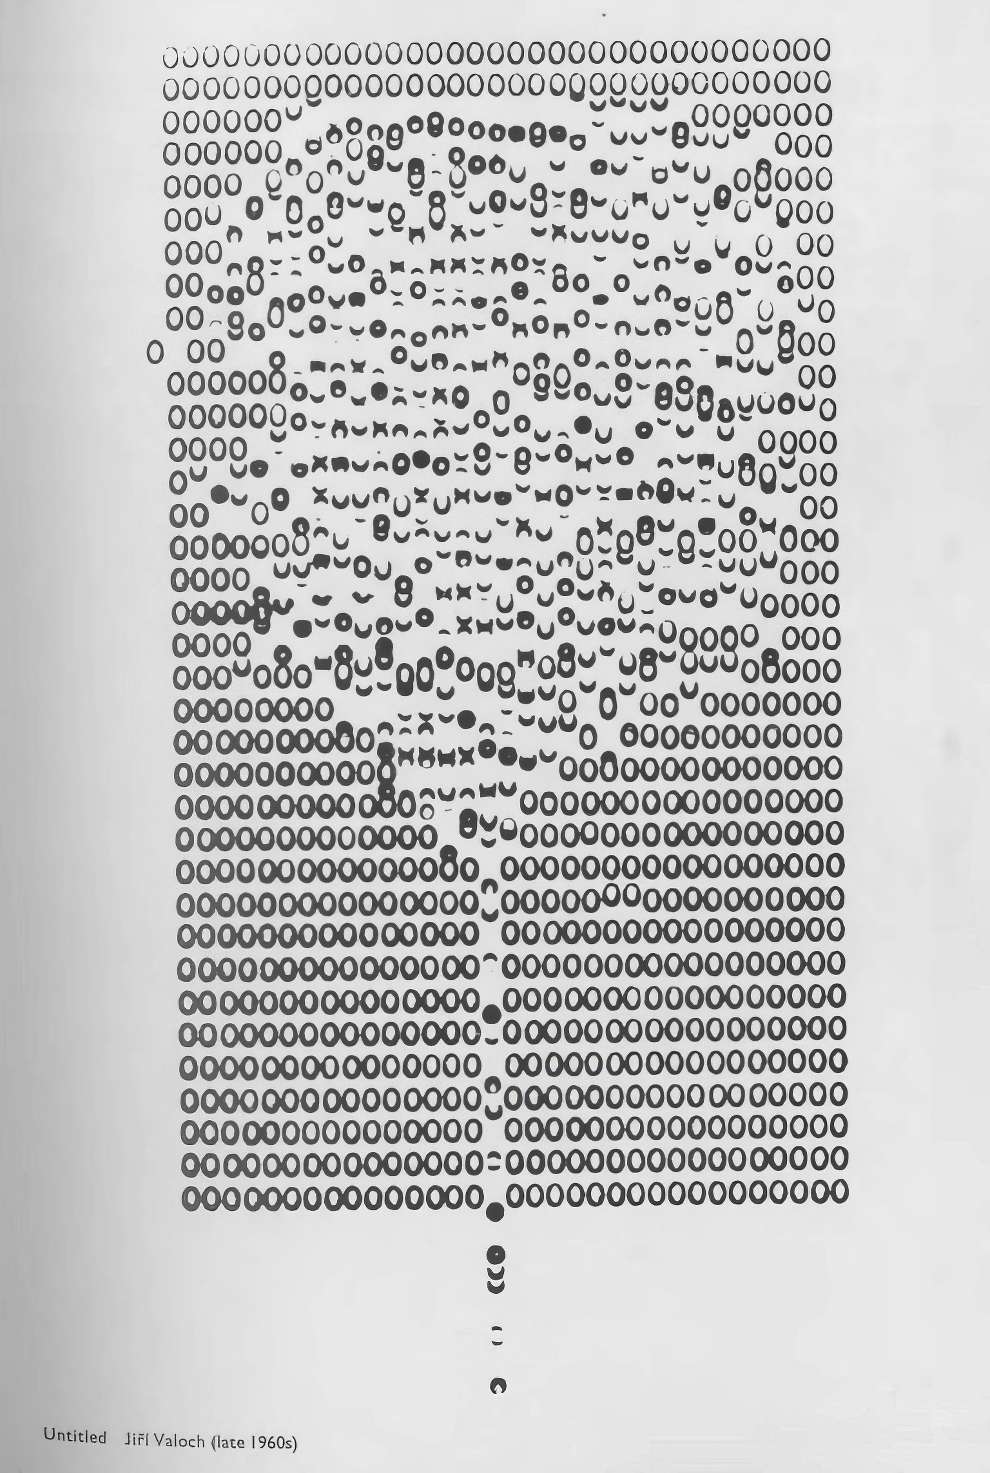 Riddell Alan Ed Typewriter Art Page 57 Image 0001 768x1143 